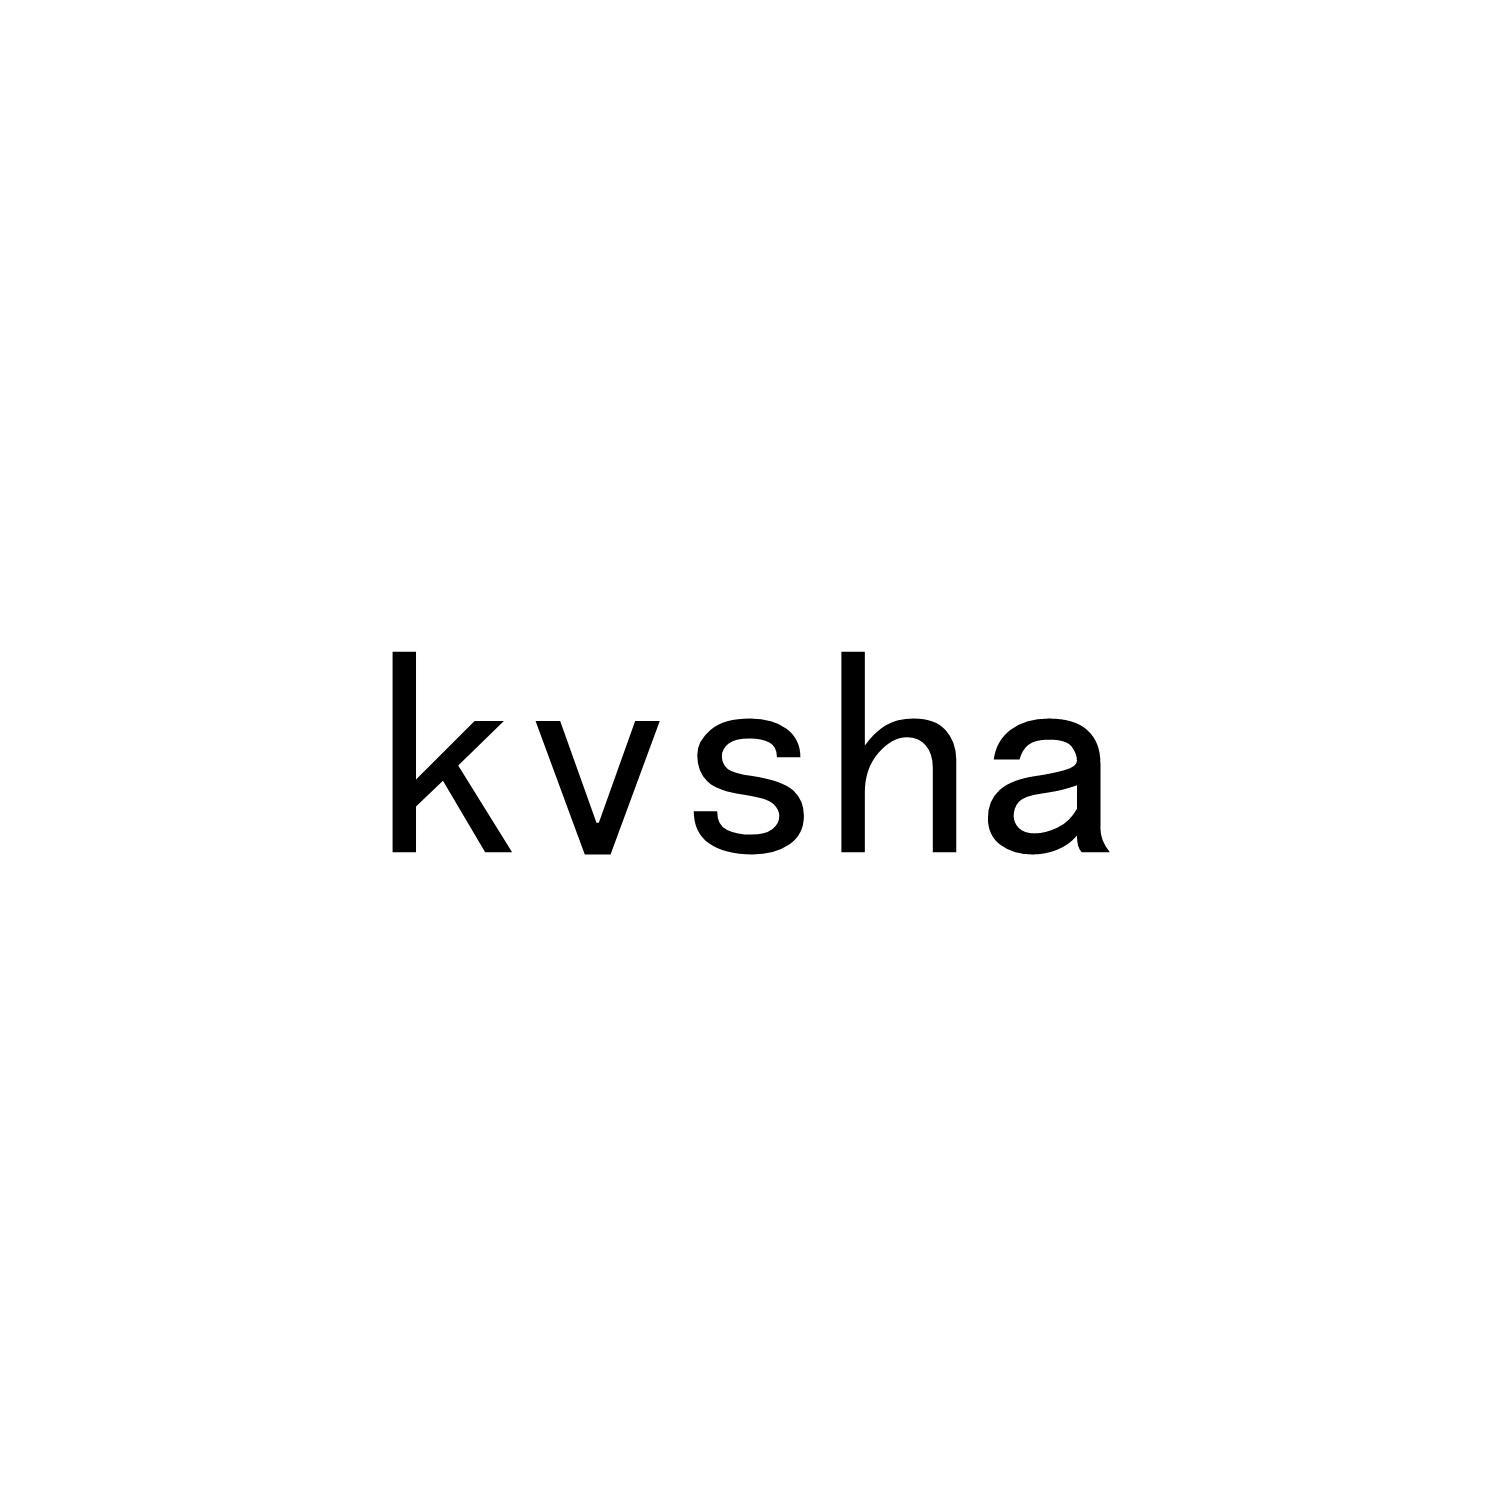 KVSHA